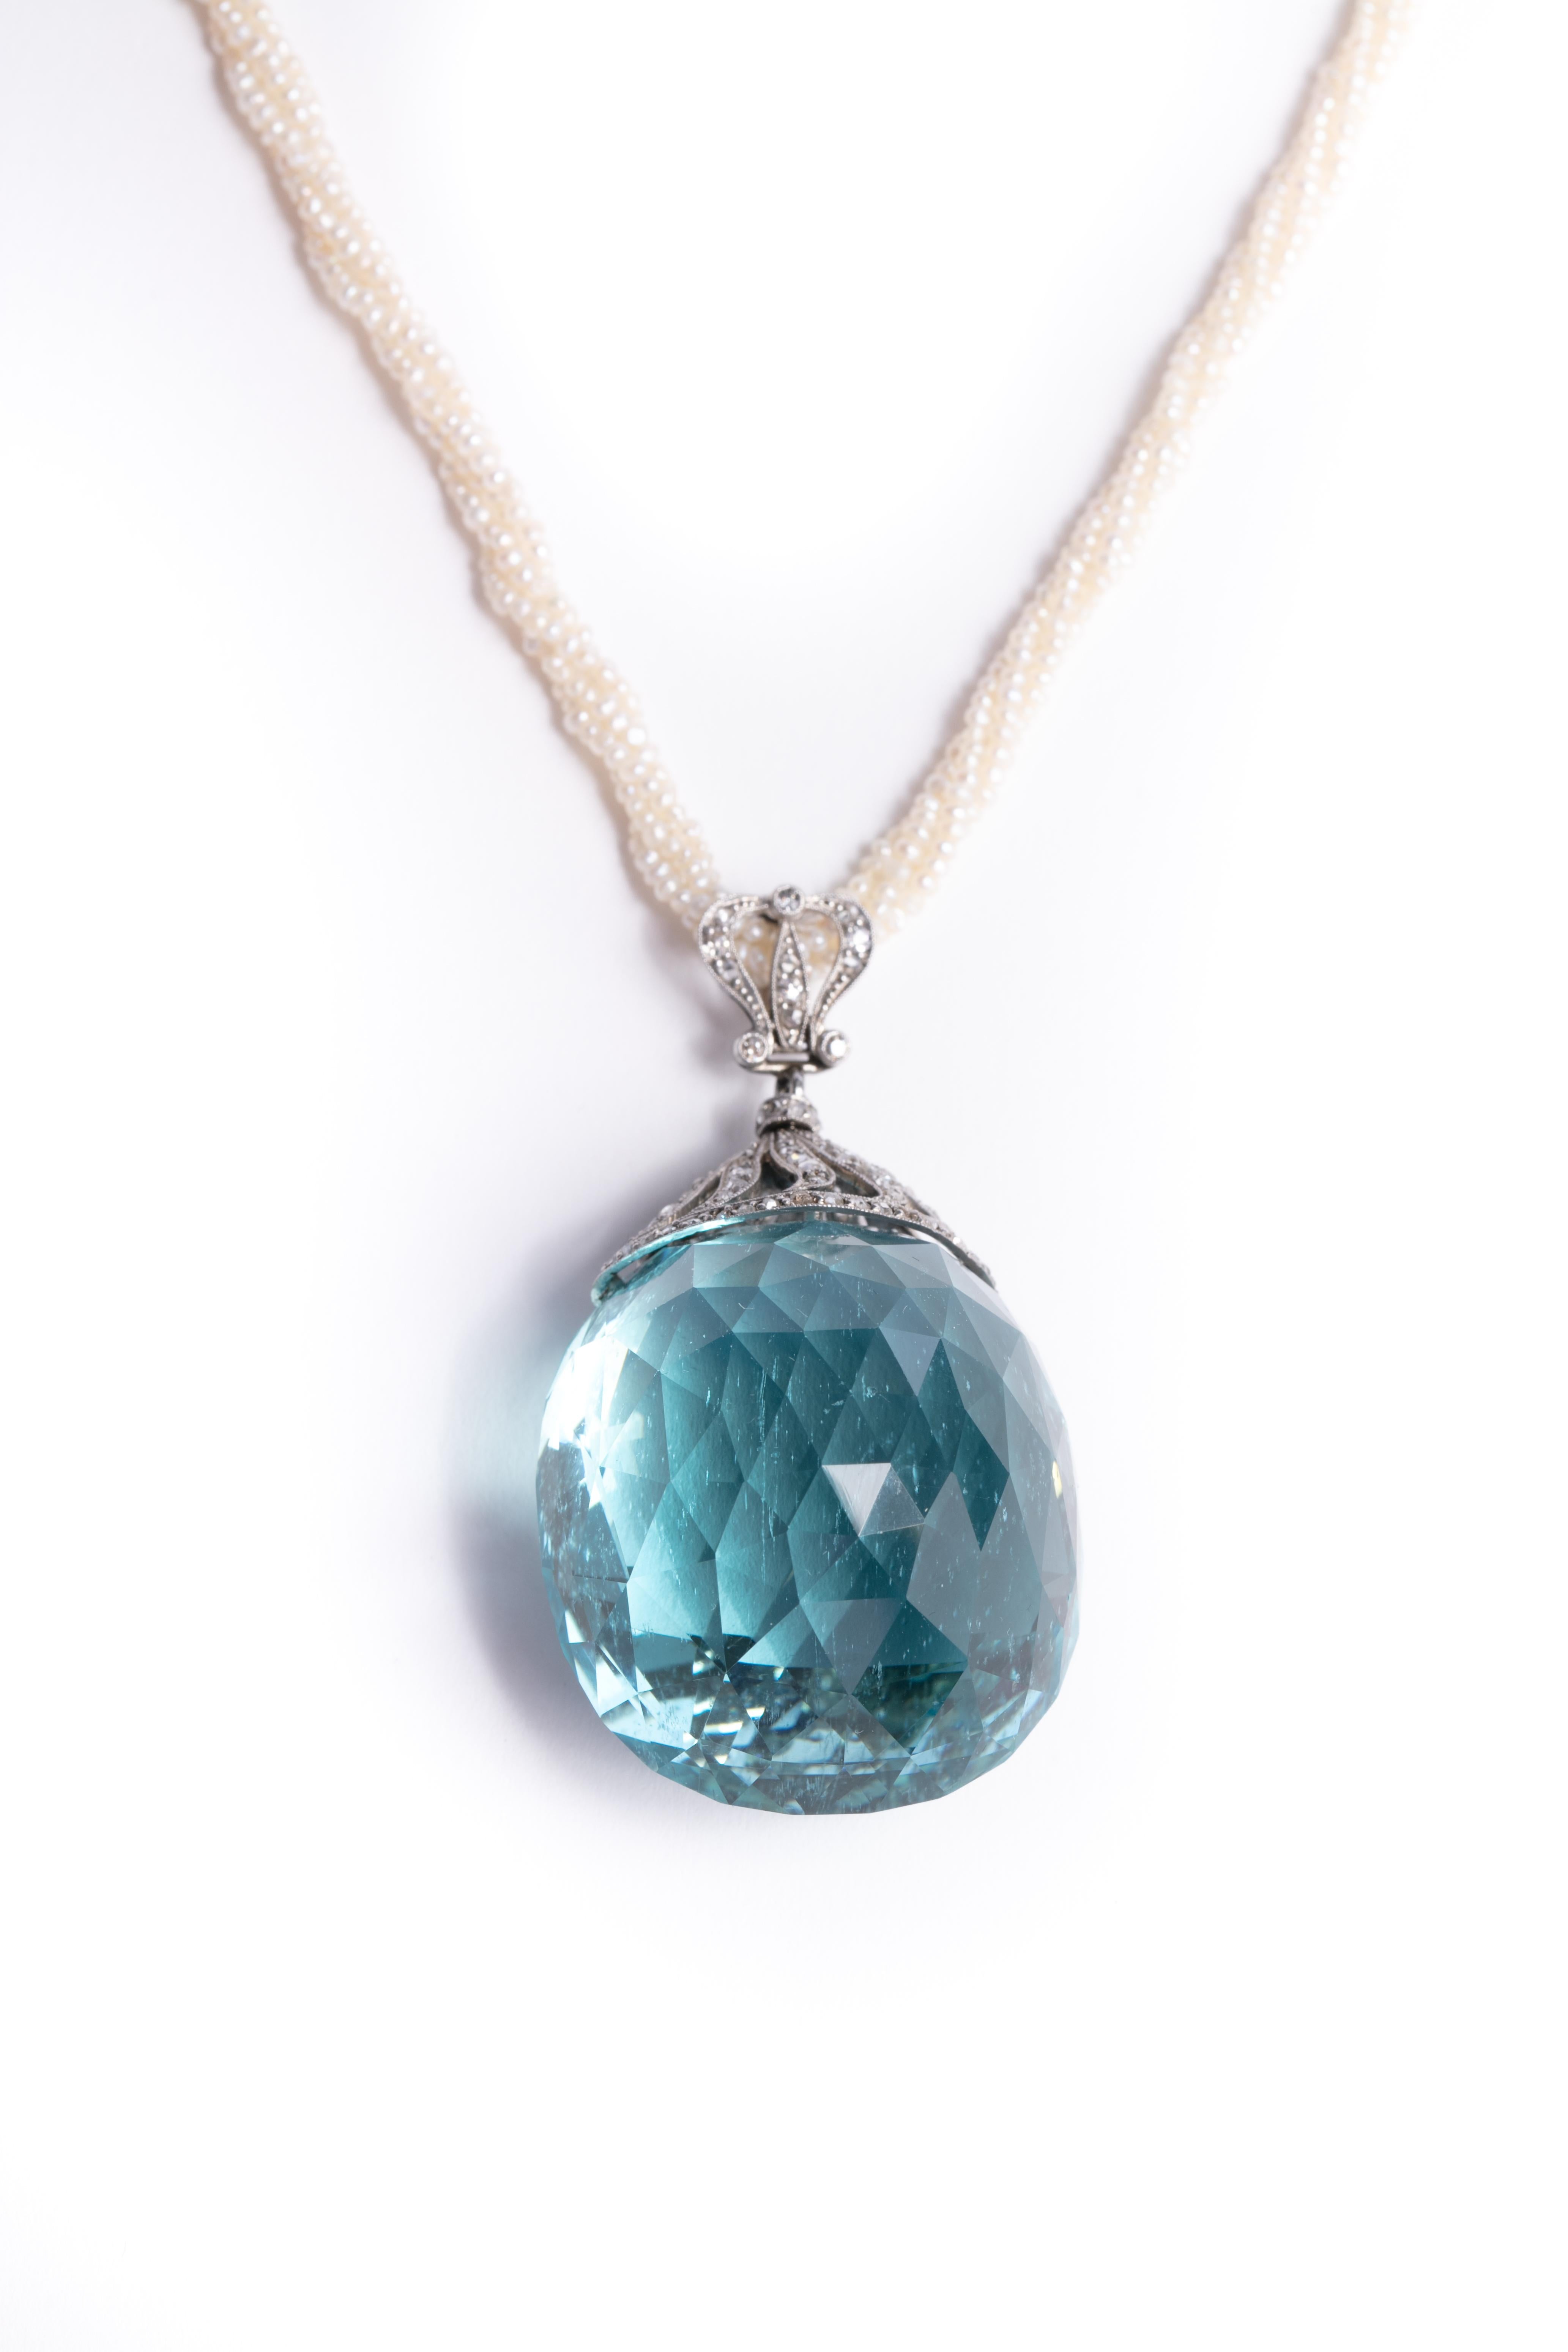 Romantic 200 Carat Aquamarine Pendant with Antique Seed Pearl Necklace